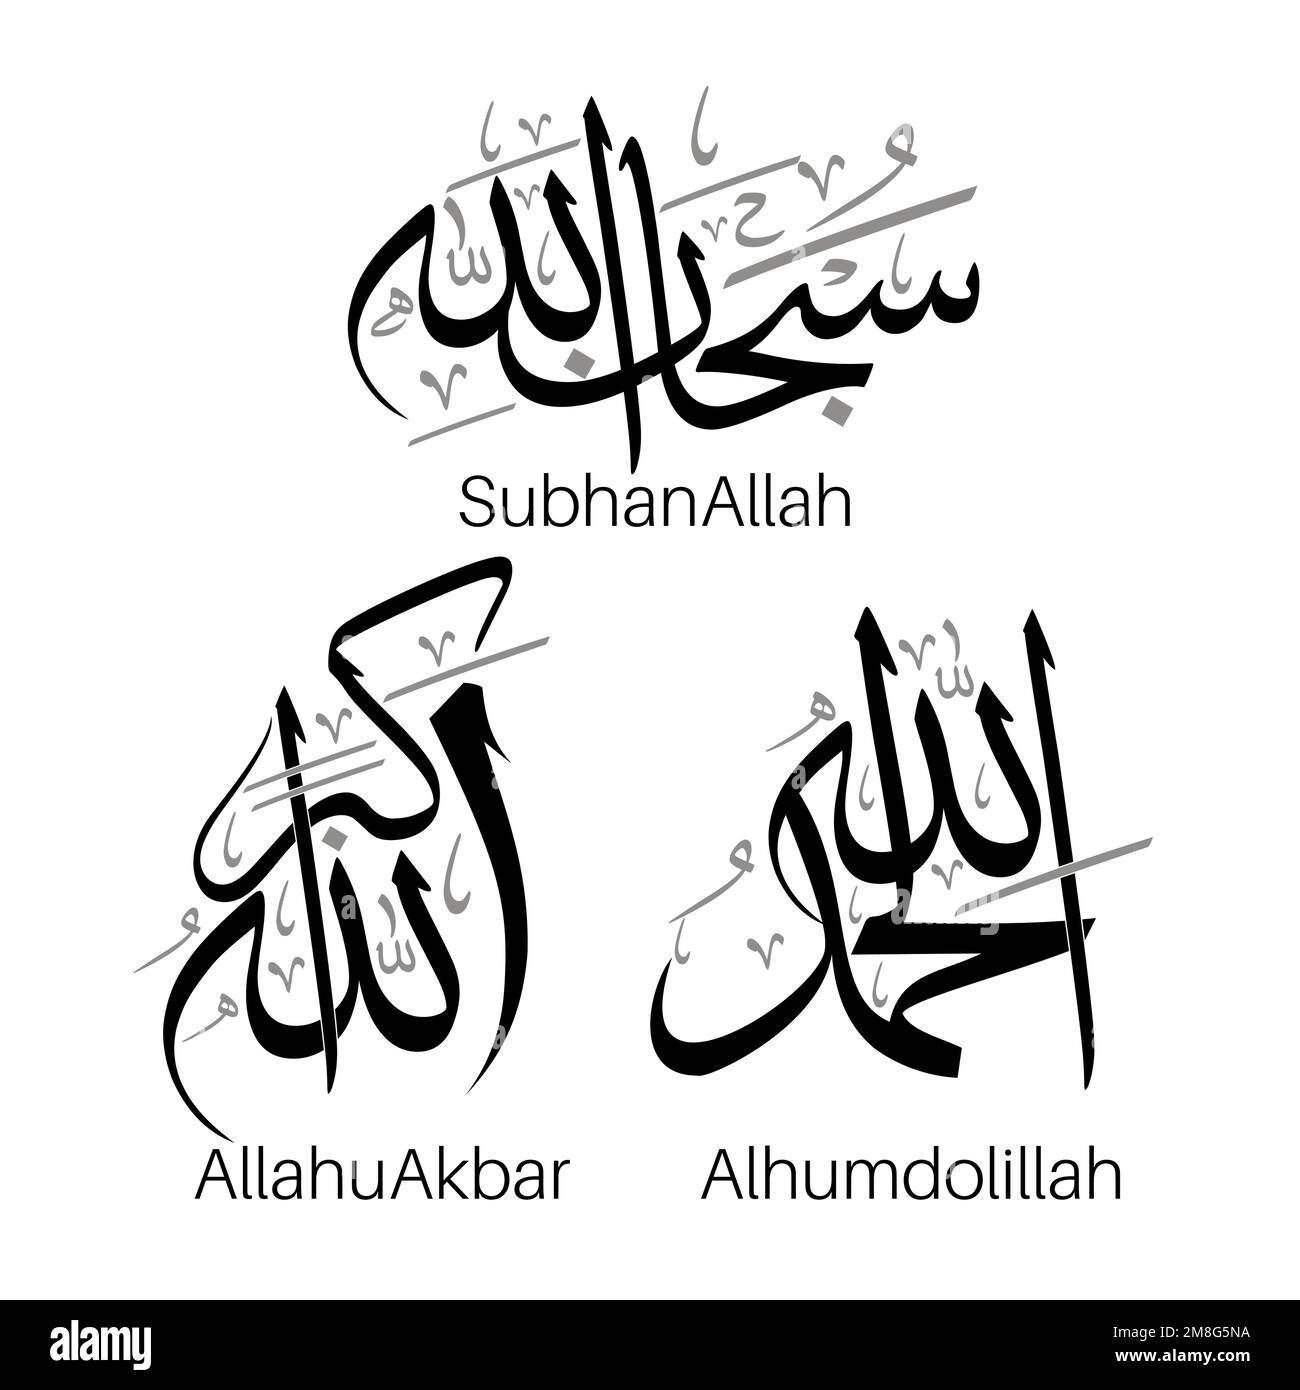 Subhan Allah alhumdolillah Allahu Akbar disegno del vettore arabo di calligraphy. Illustrazione Vettoriale